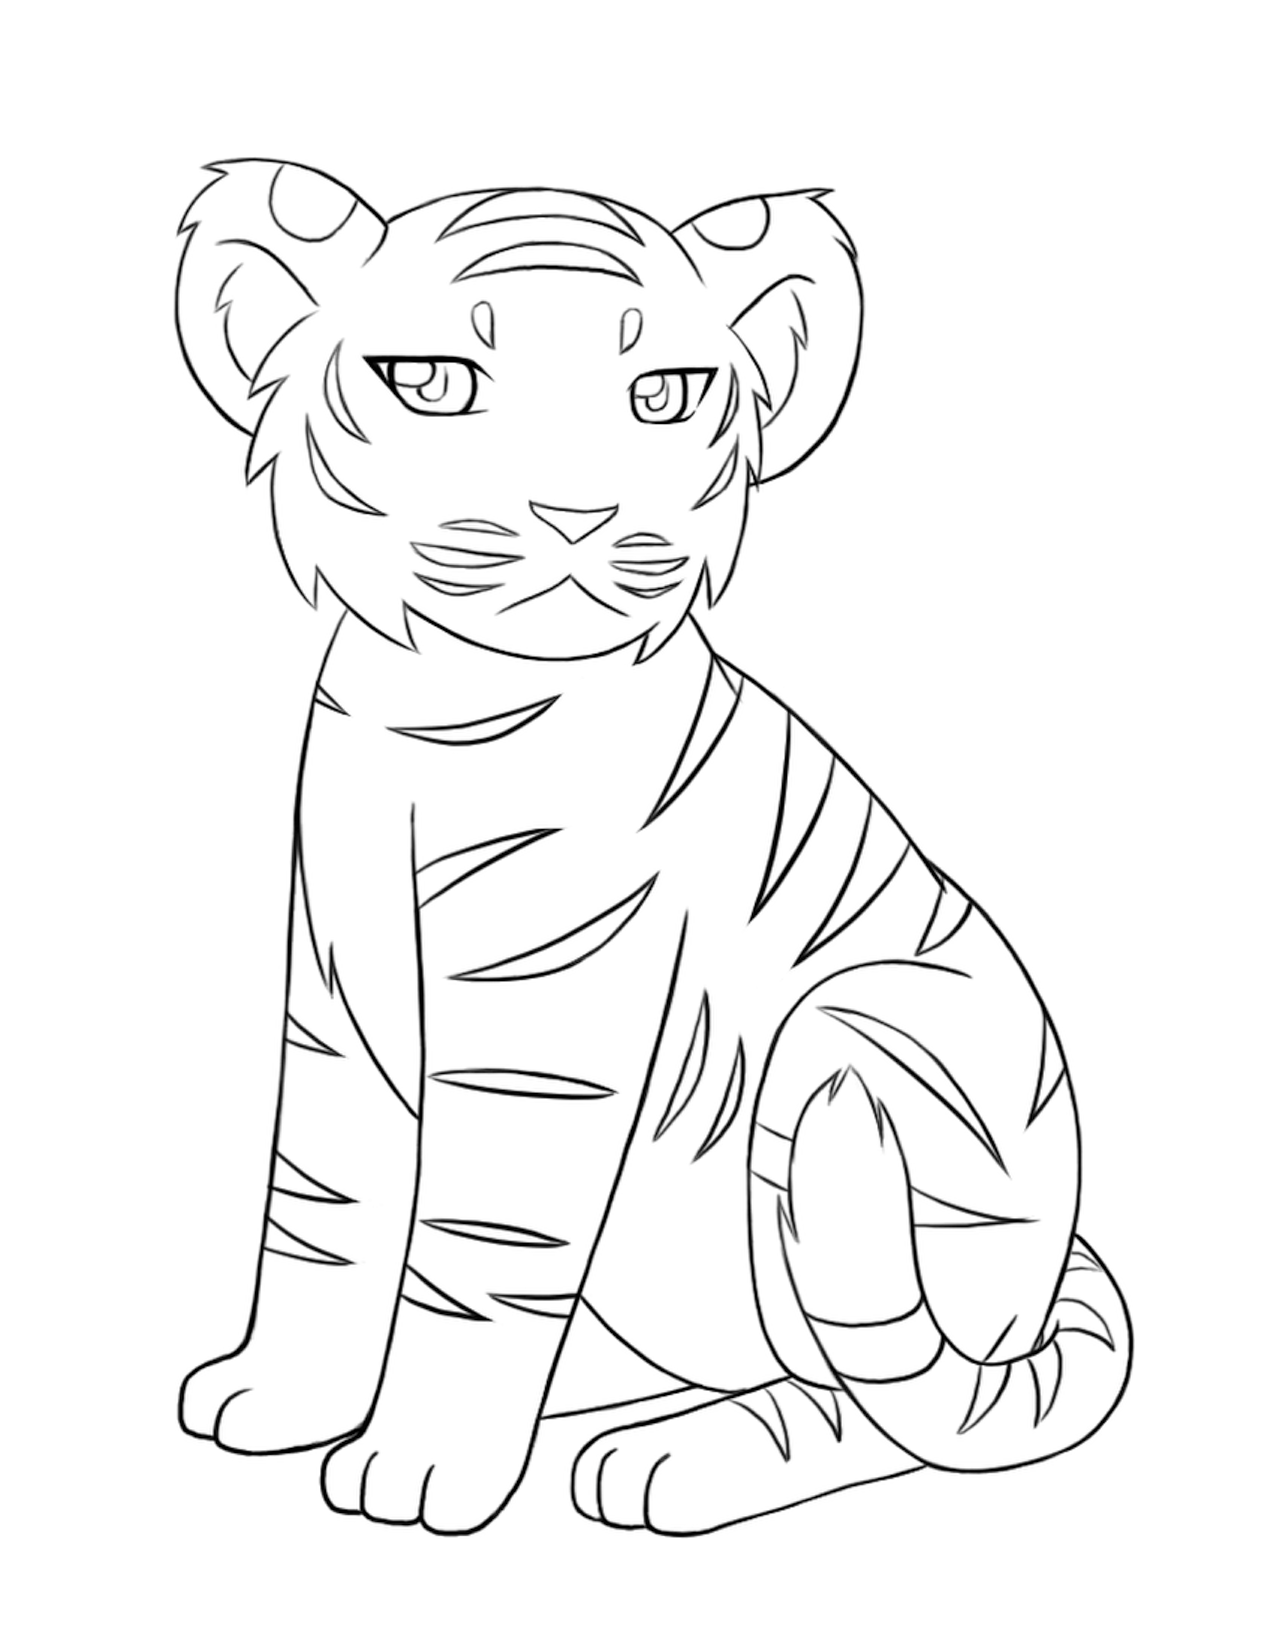 Original Hand Drawing Small Tiger Cub Stock Illustration 273897008   Shutterstock